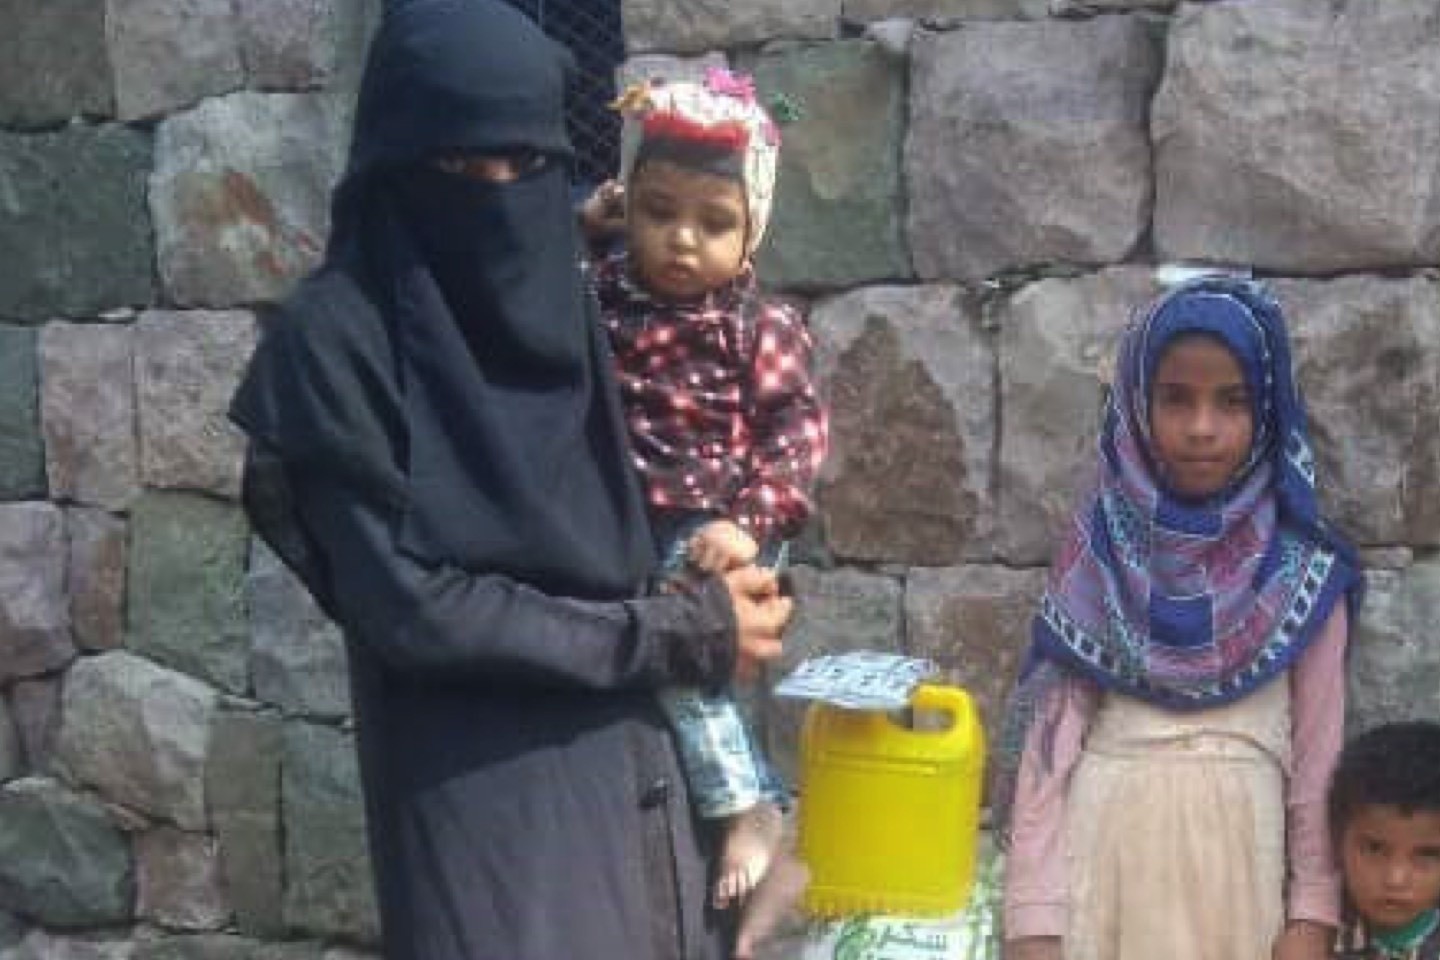 Aktion Kleiner Prinz,Jemen,Kinder,Krieg,Hilfe,Not,spenden,